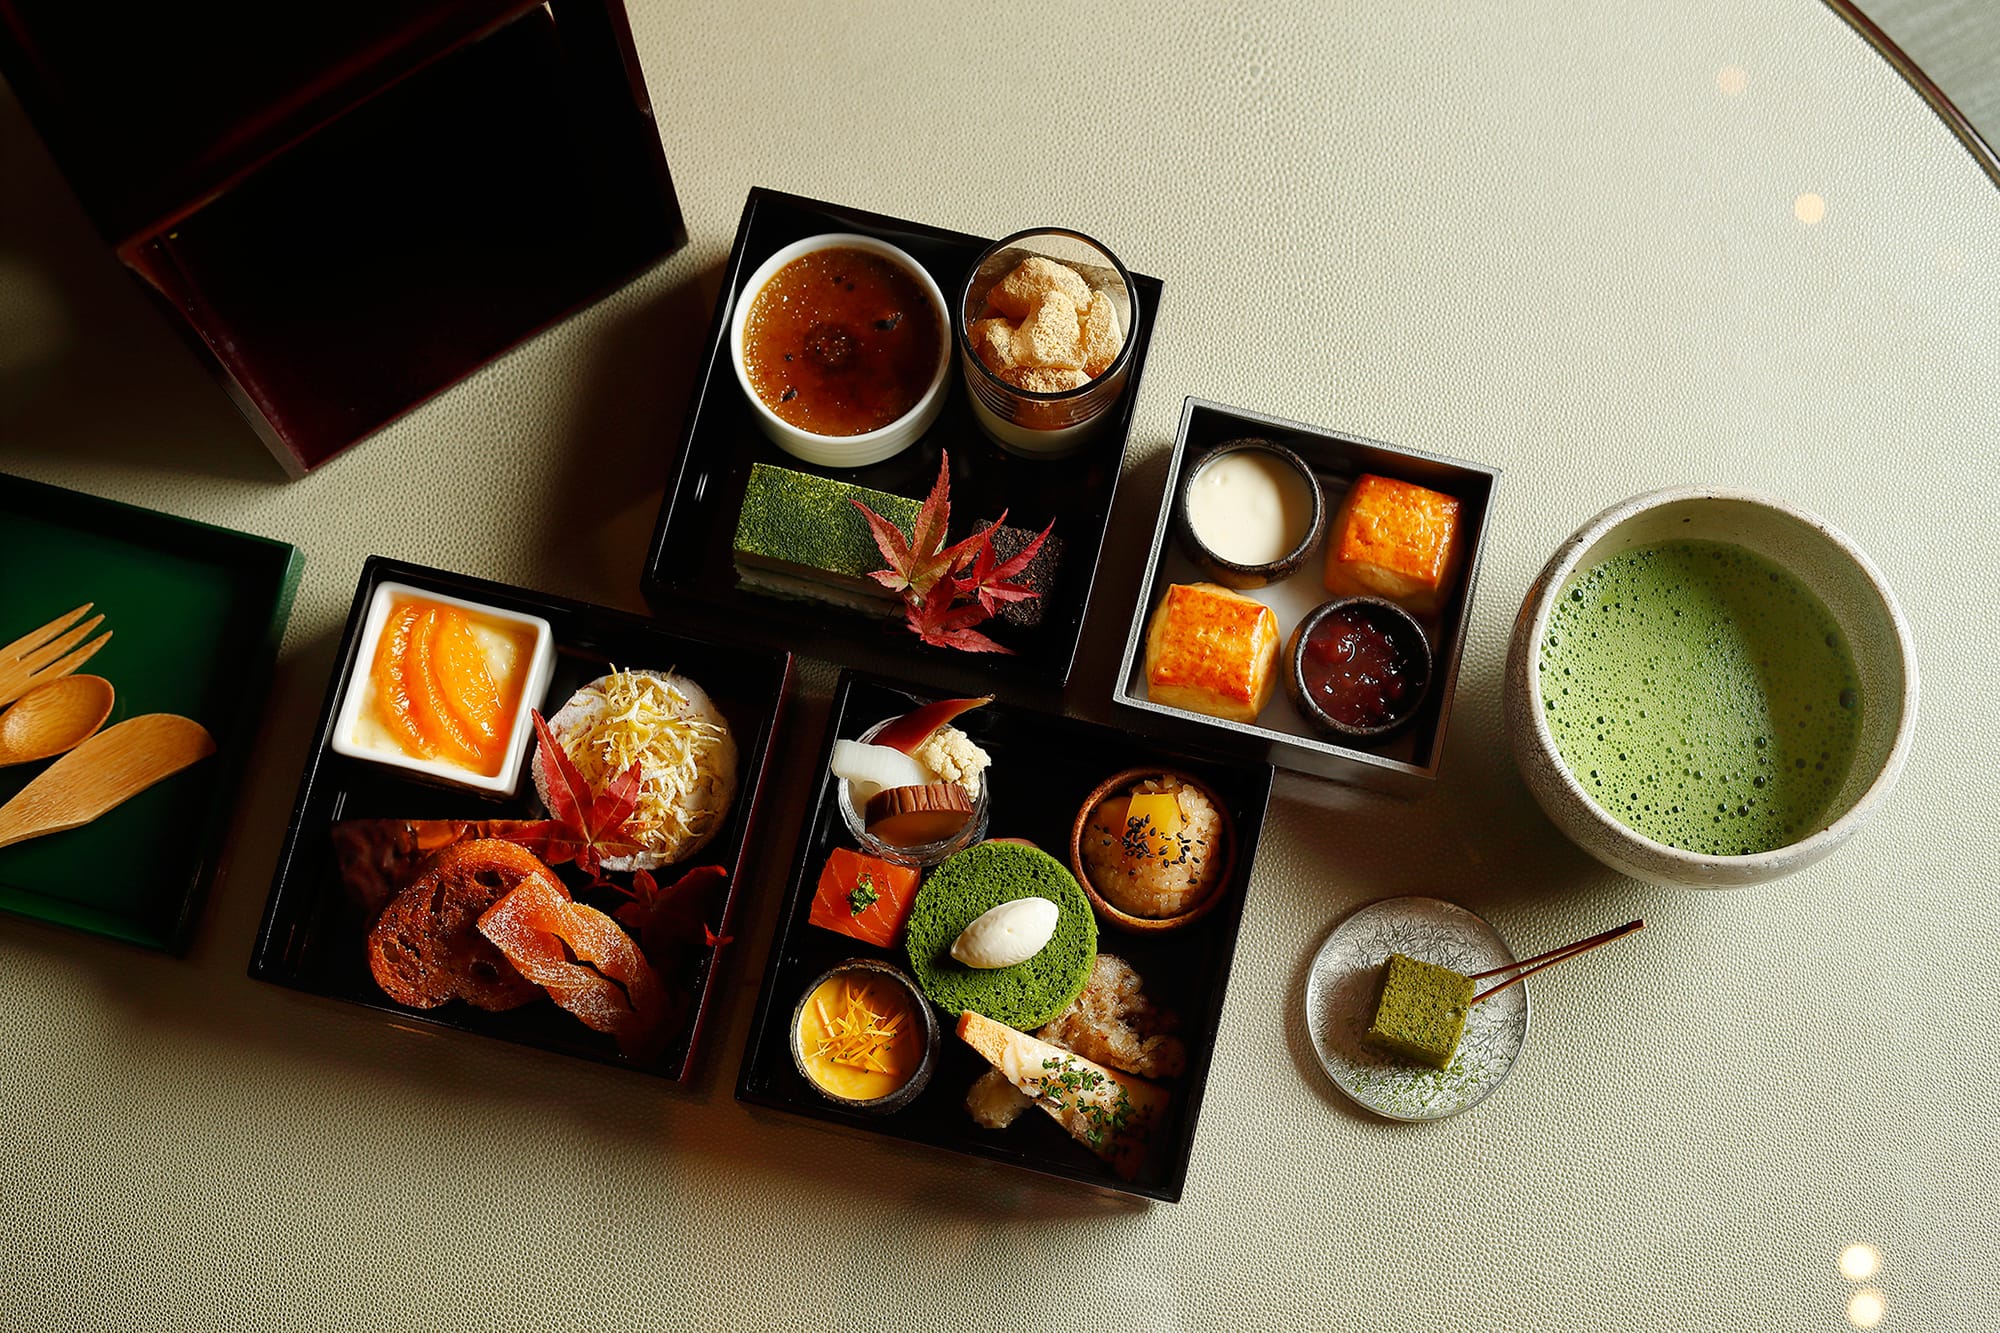 有機茶葉の味わいを堪能する日本茶スイーツ、お茶とのペアリングを楽しむセイボリーが詰まった豪華な三段重。